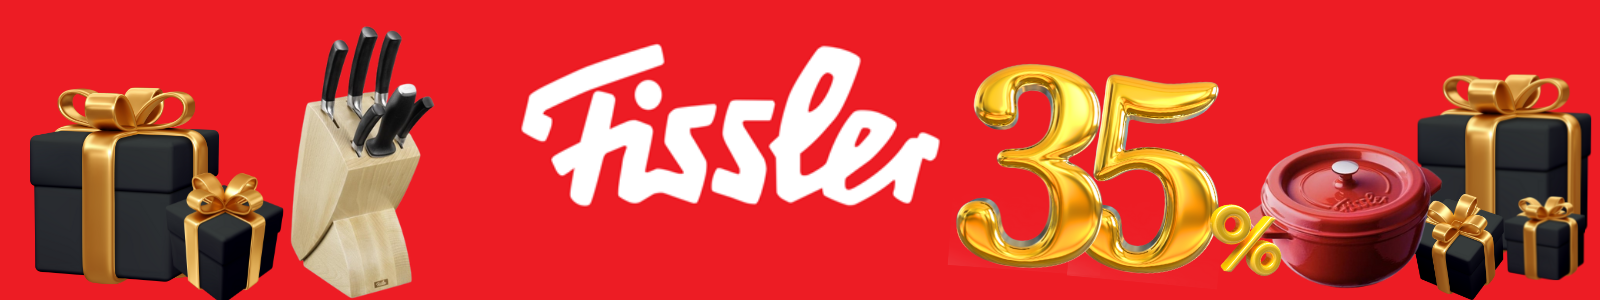 FisslerBF